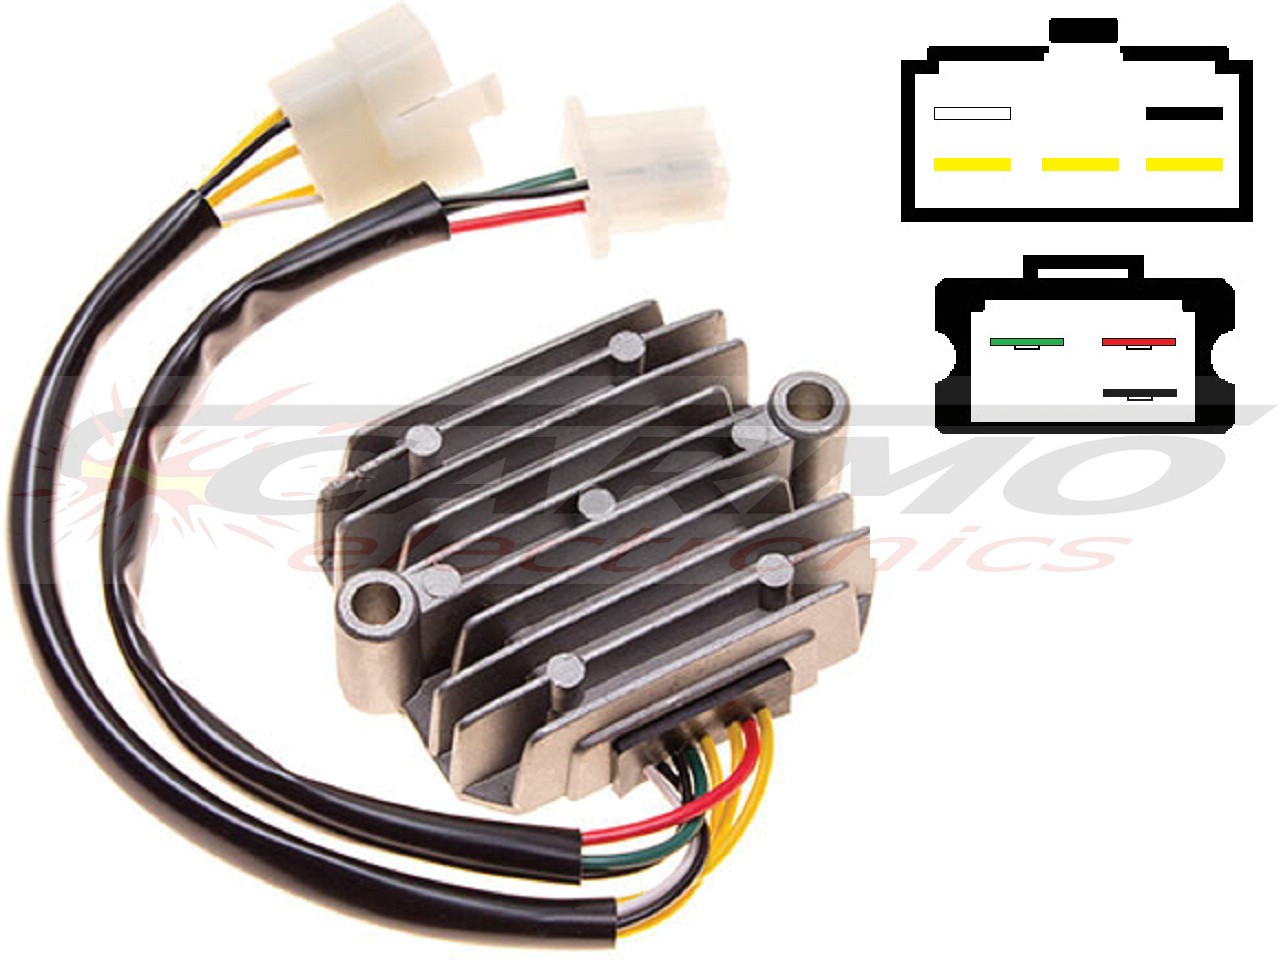 CARR211 Honda CB MOSFET regulador de voltagem retificador (SH234-12, SH236-12, SH236A-12, SH236B-12, SH538-12, SH255-12) - Clique na Imagem para Fechar